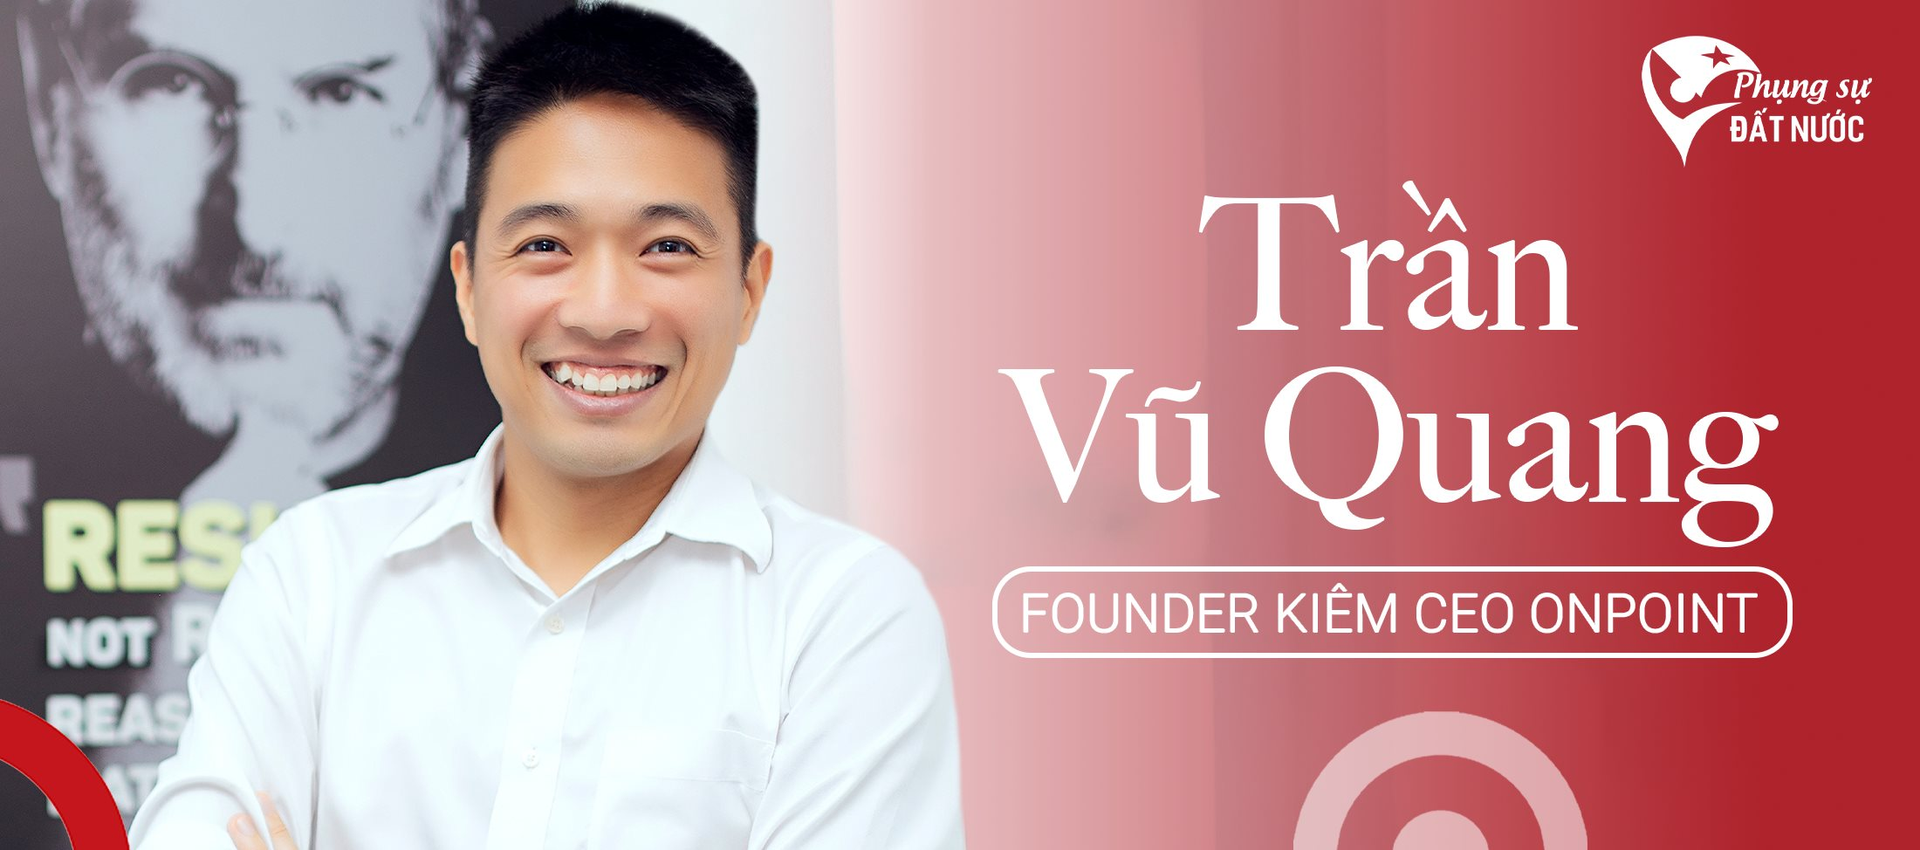 Giấc mơ phục vụ 100 triệu khách hàng Đông Nam Á của founder startup dịch vụ hỗ trợ TMĐT số 1 Việt Nam - Ảnh 1.